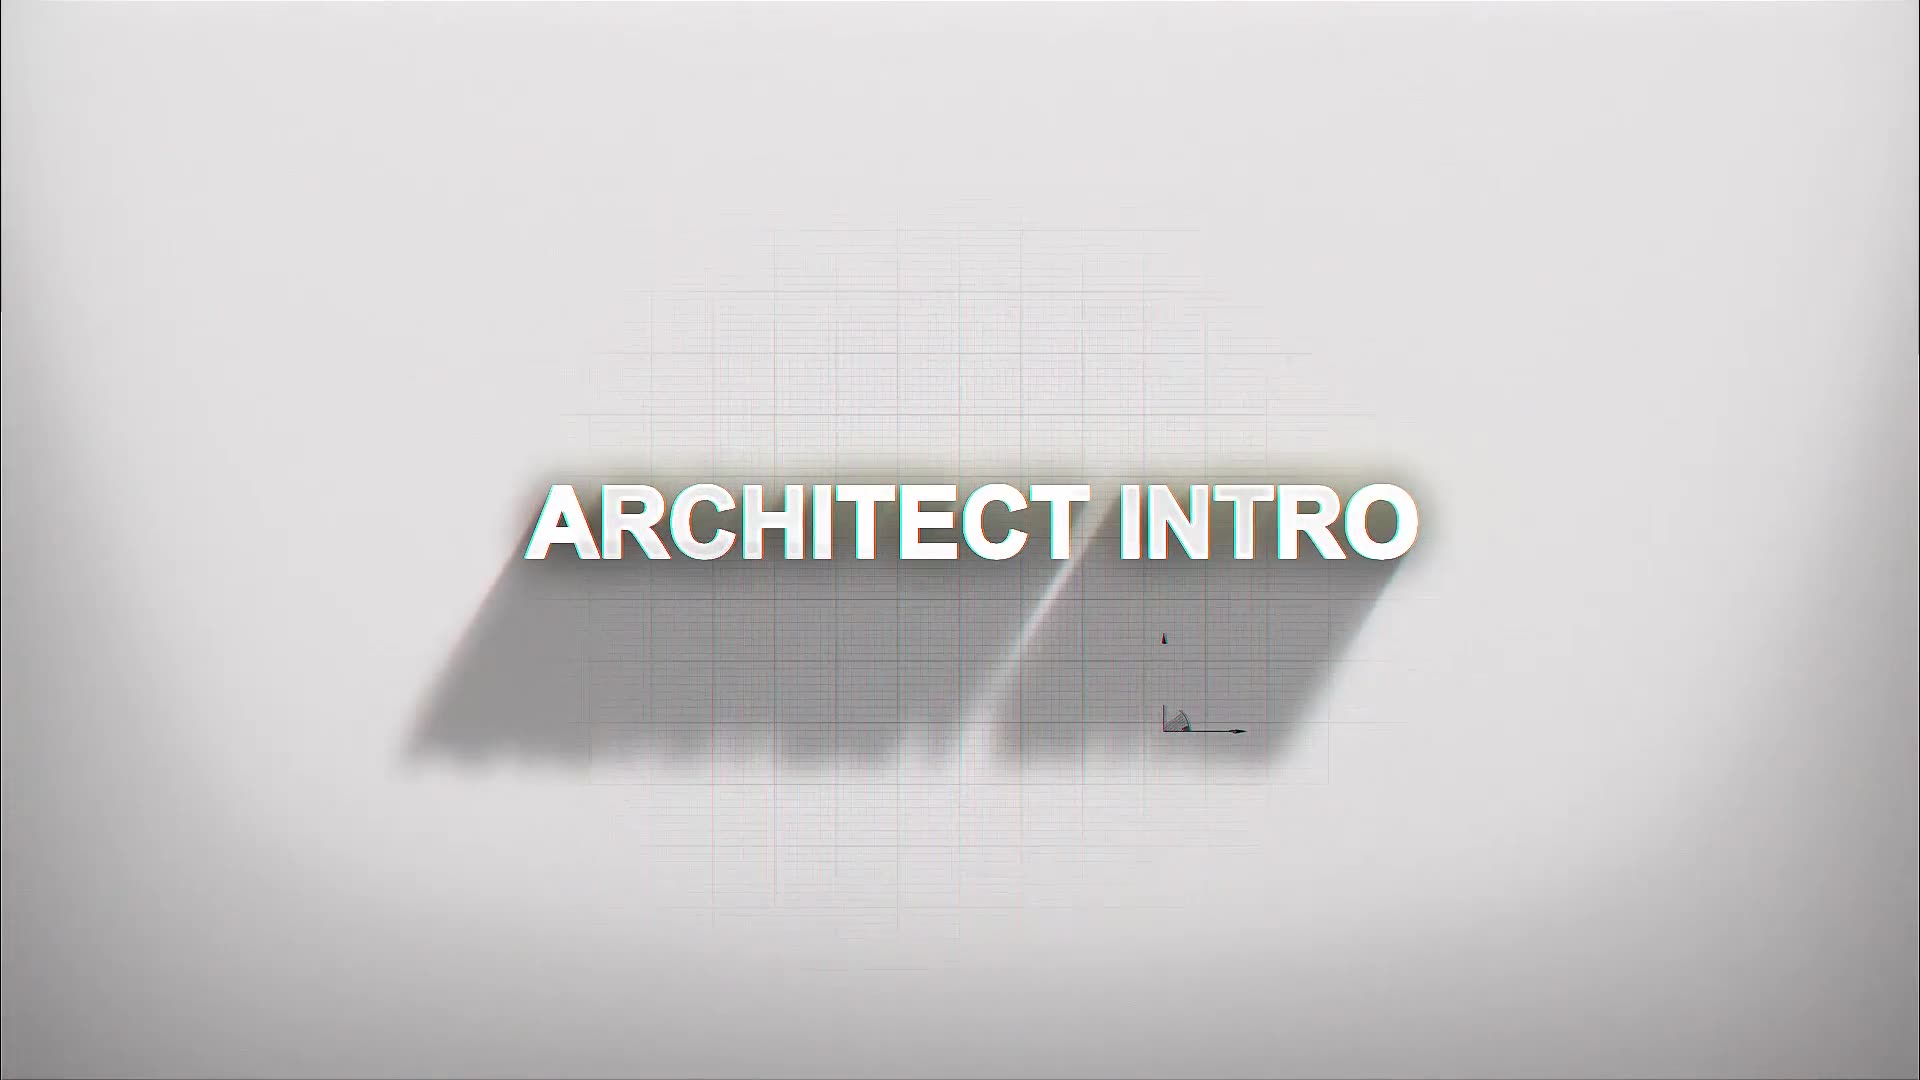 Architect Intro Videohive 30289475 Premiere Pro Image 3